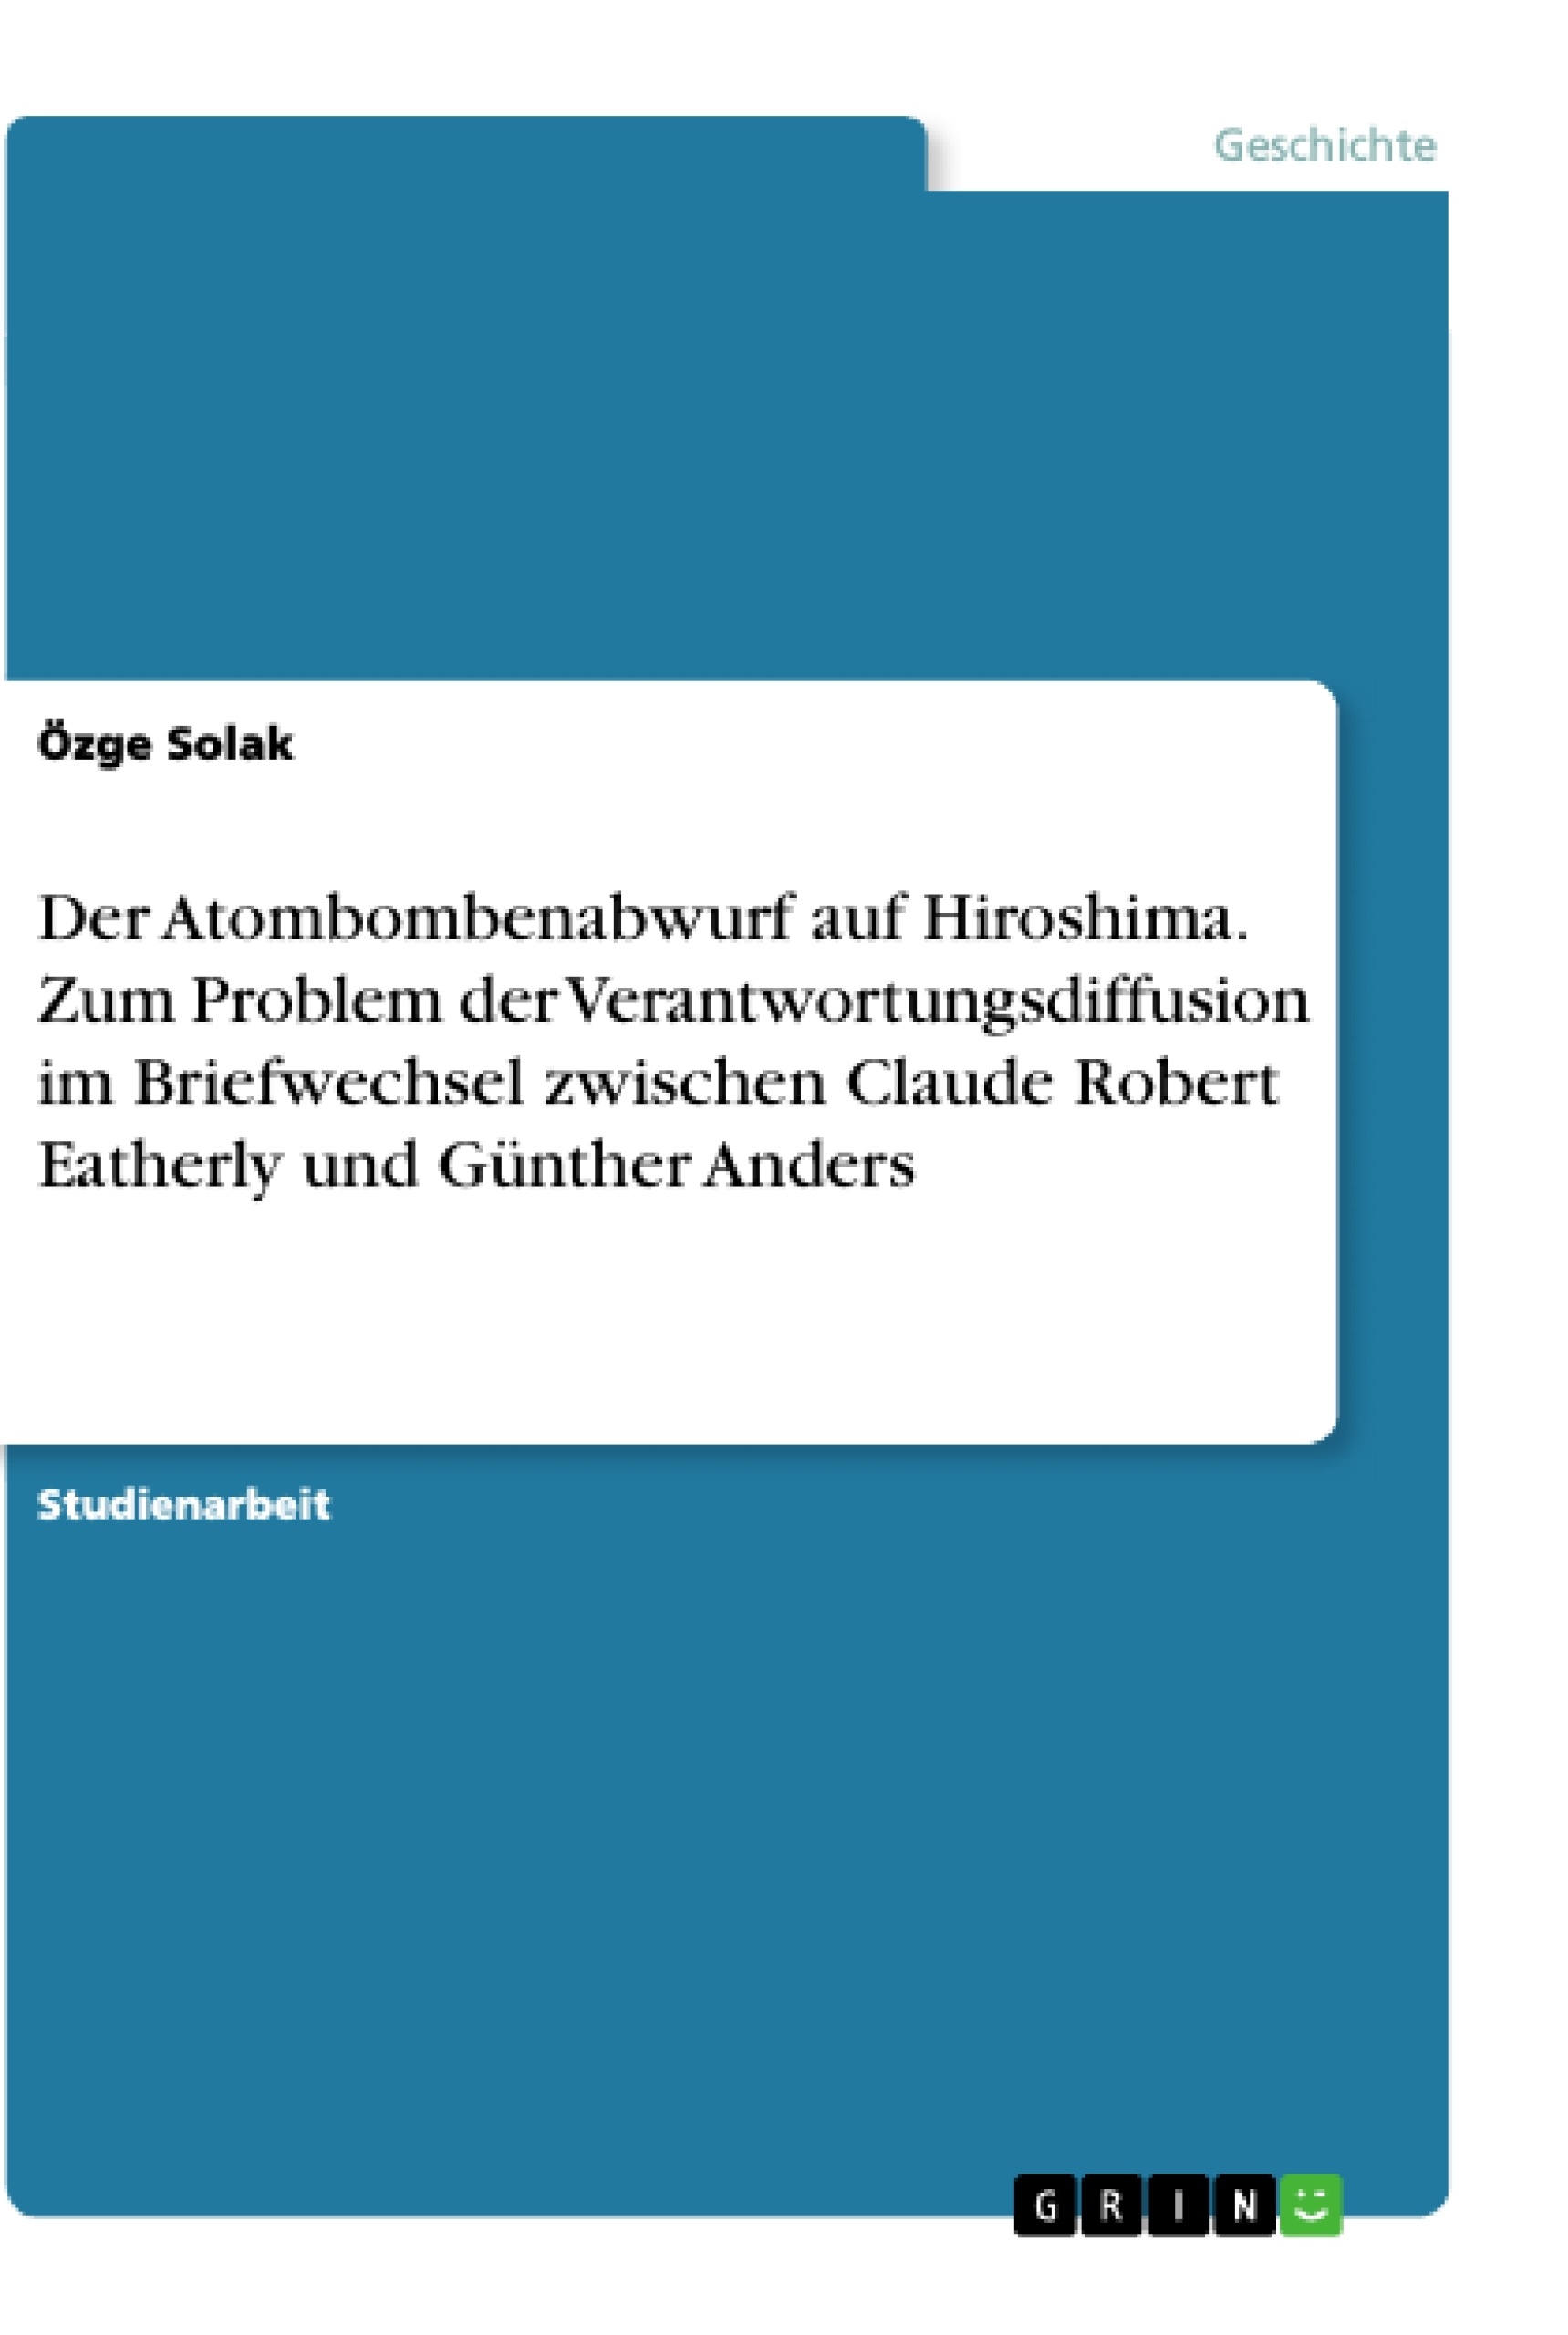 Título: Der Atombombenabwurf auf Hiroshima. Zum Problem der Verantwortungsdiffusion im Briefwechsel zwischen Claude Robert Eatherly und Günther Anders